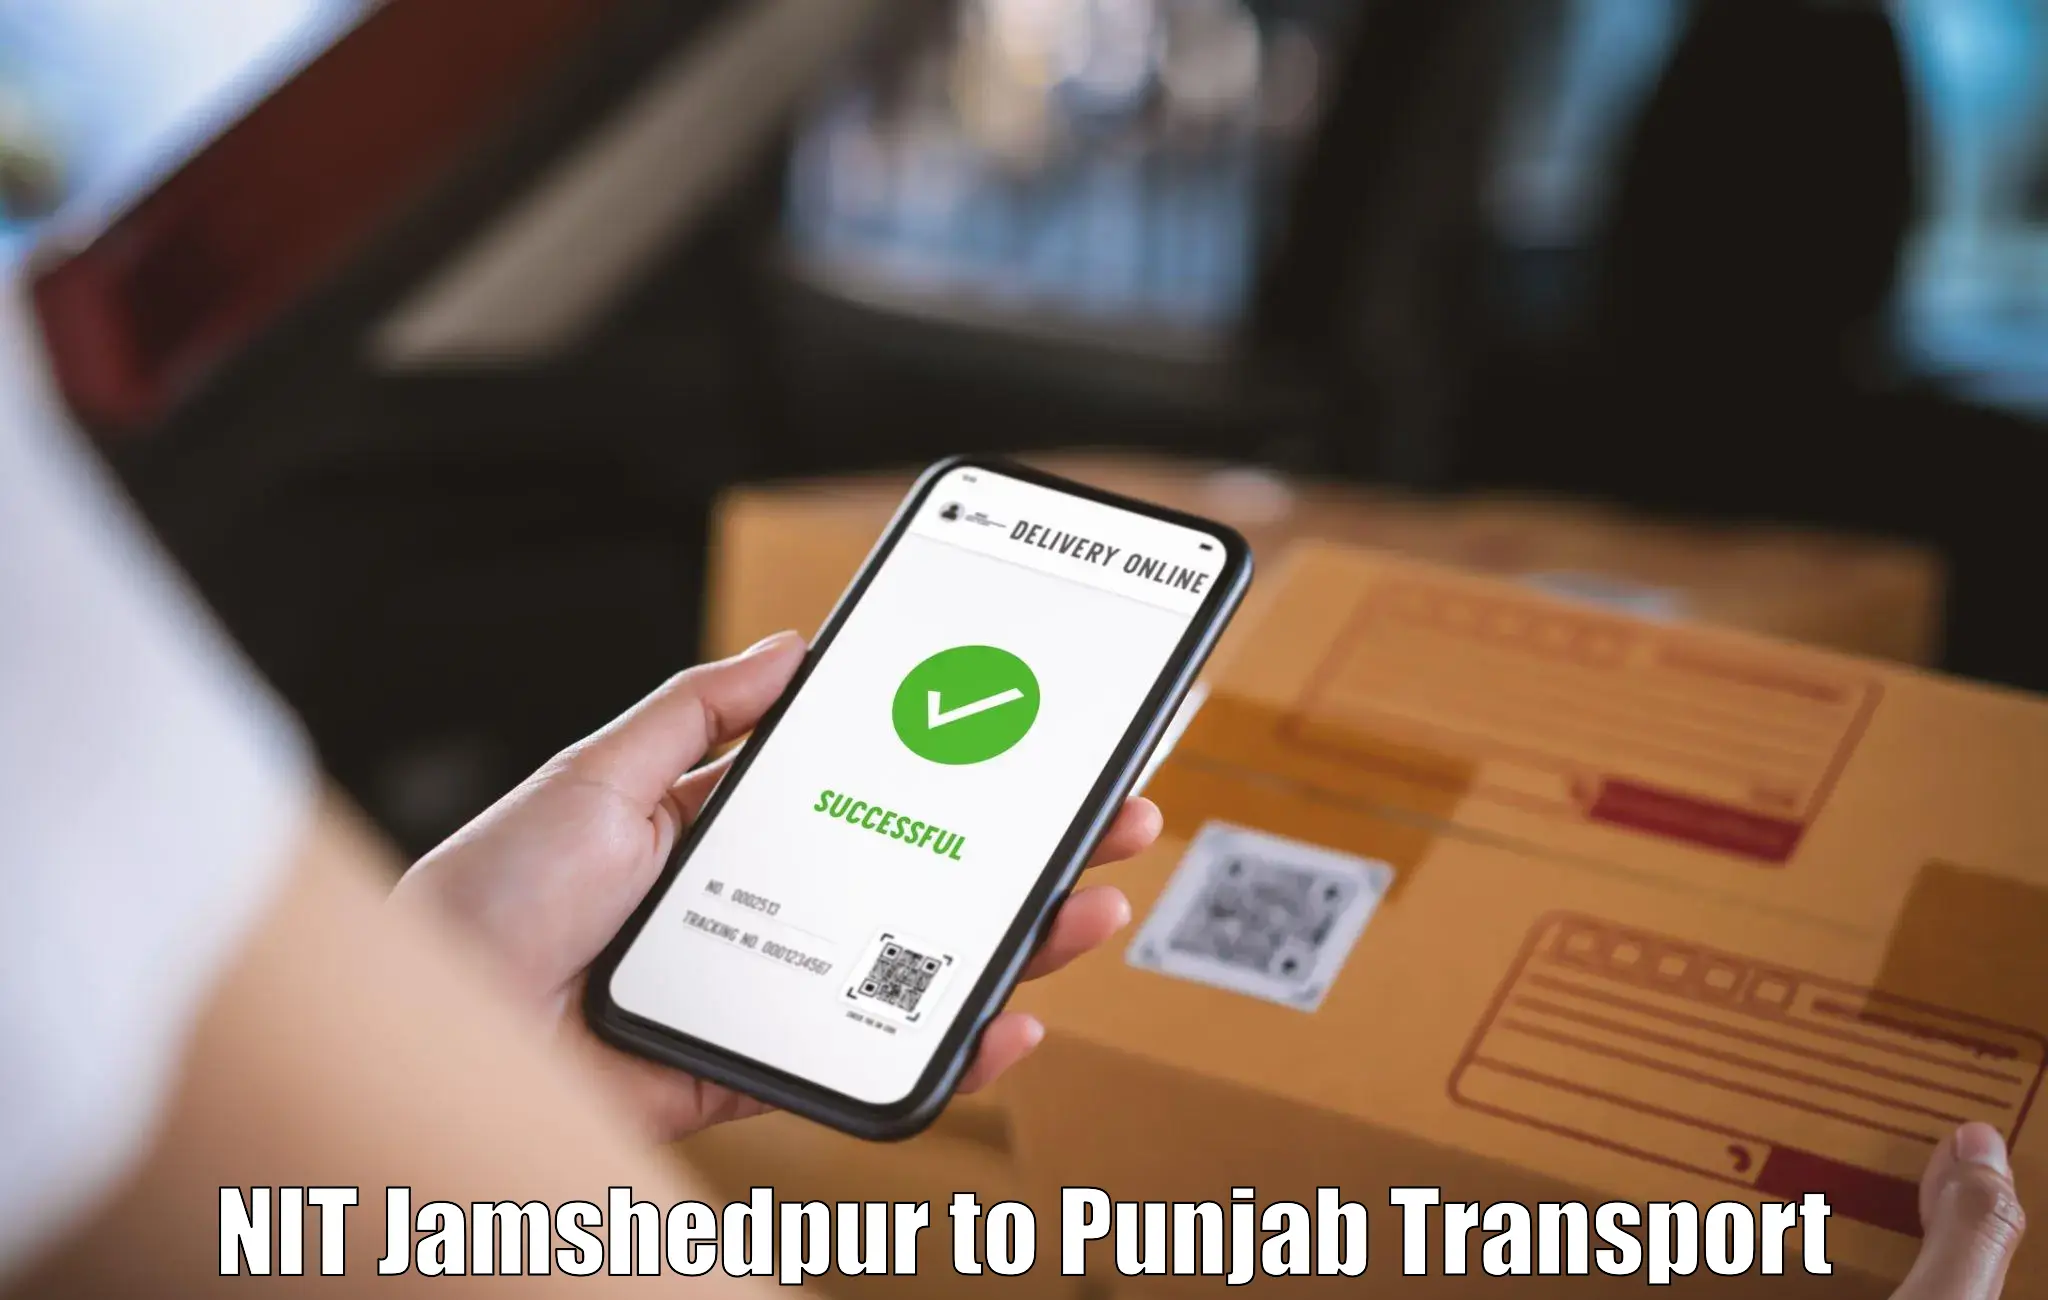 Parcel transport services NIT Jamshedpur to Kotkapura